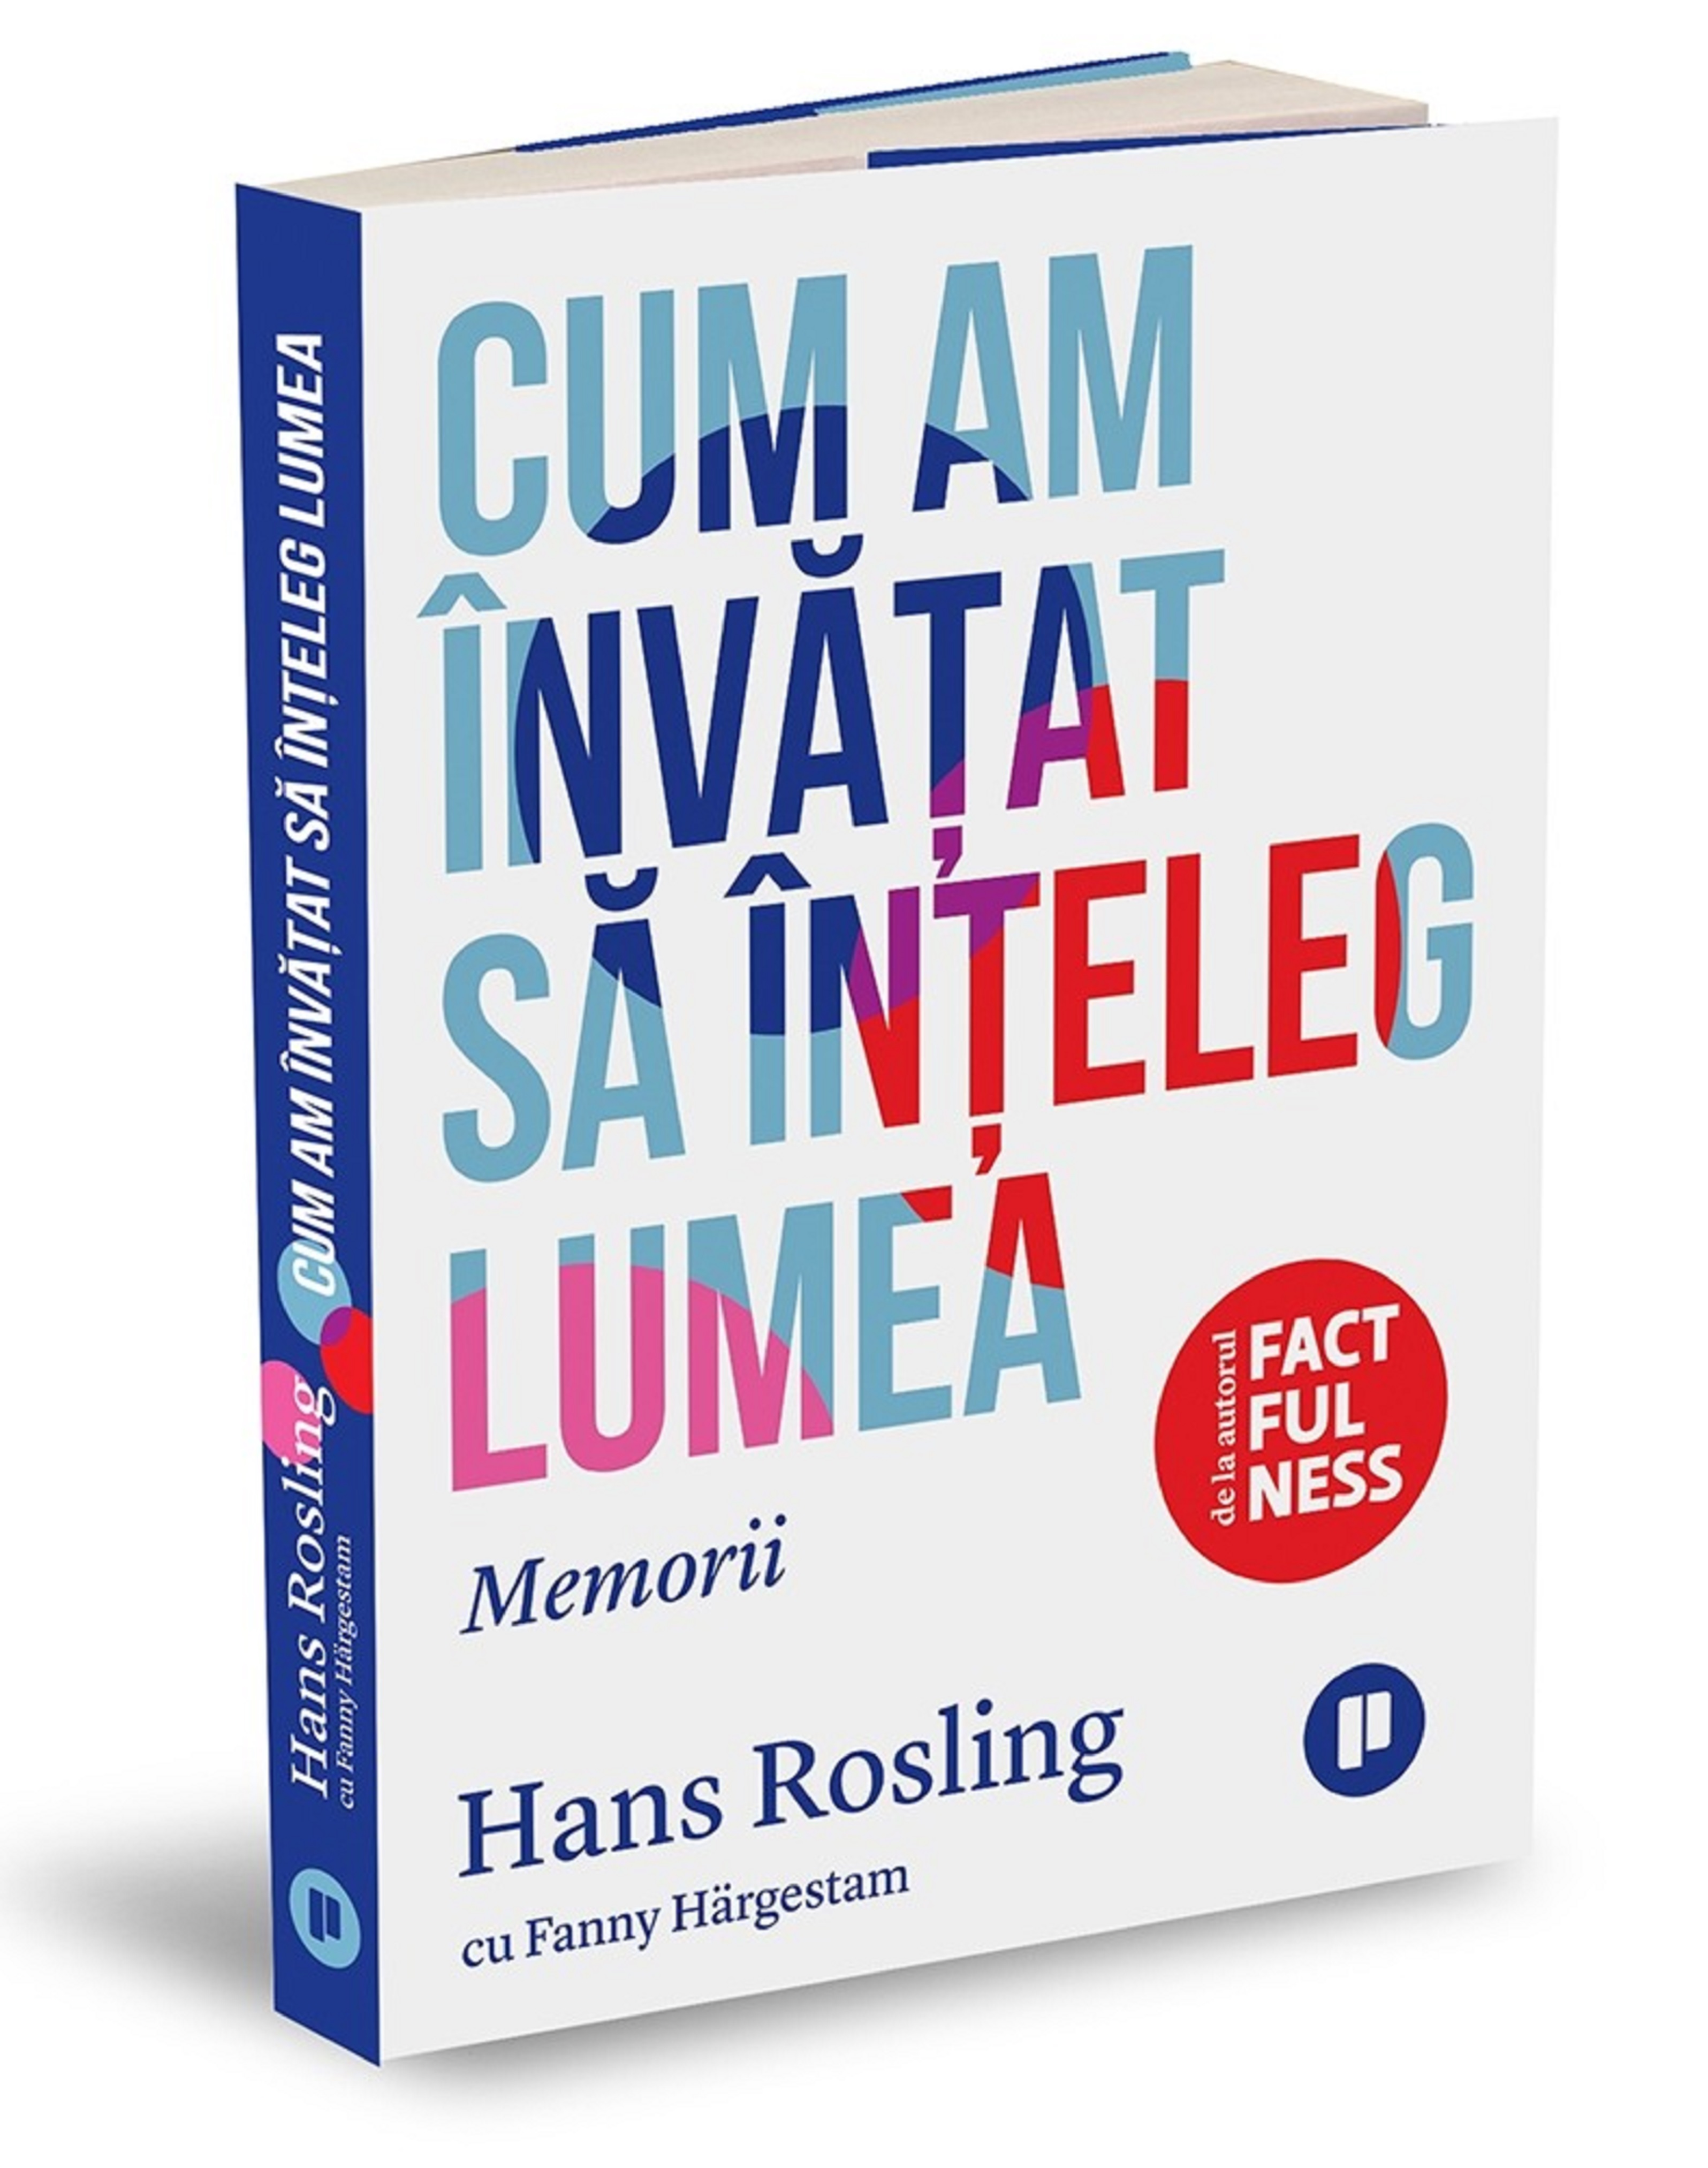 Cum am invatat sa inteleg lumea | Fanny Hargestam, Hans Rosling de la carturesti imagine 2021